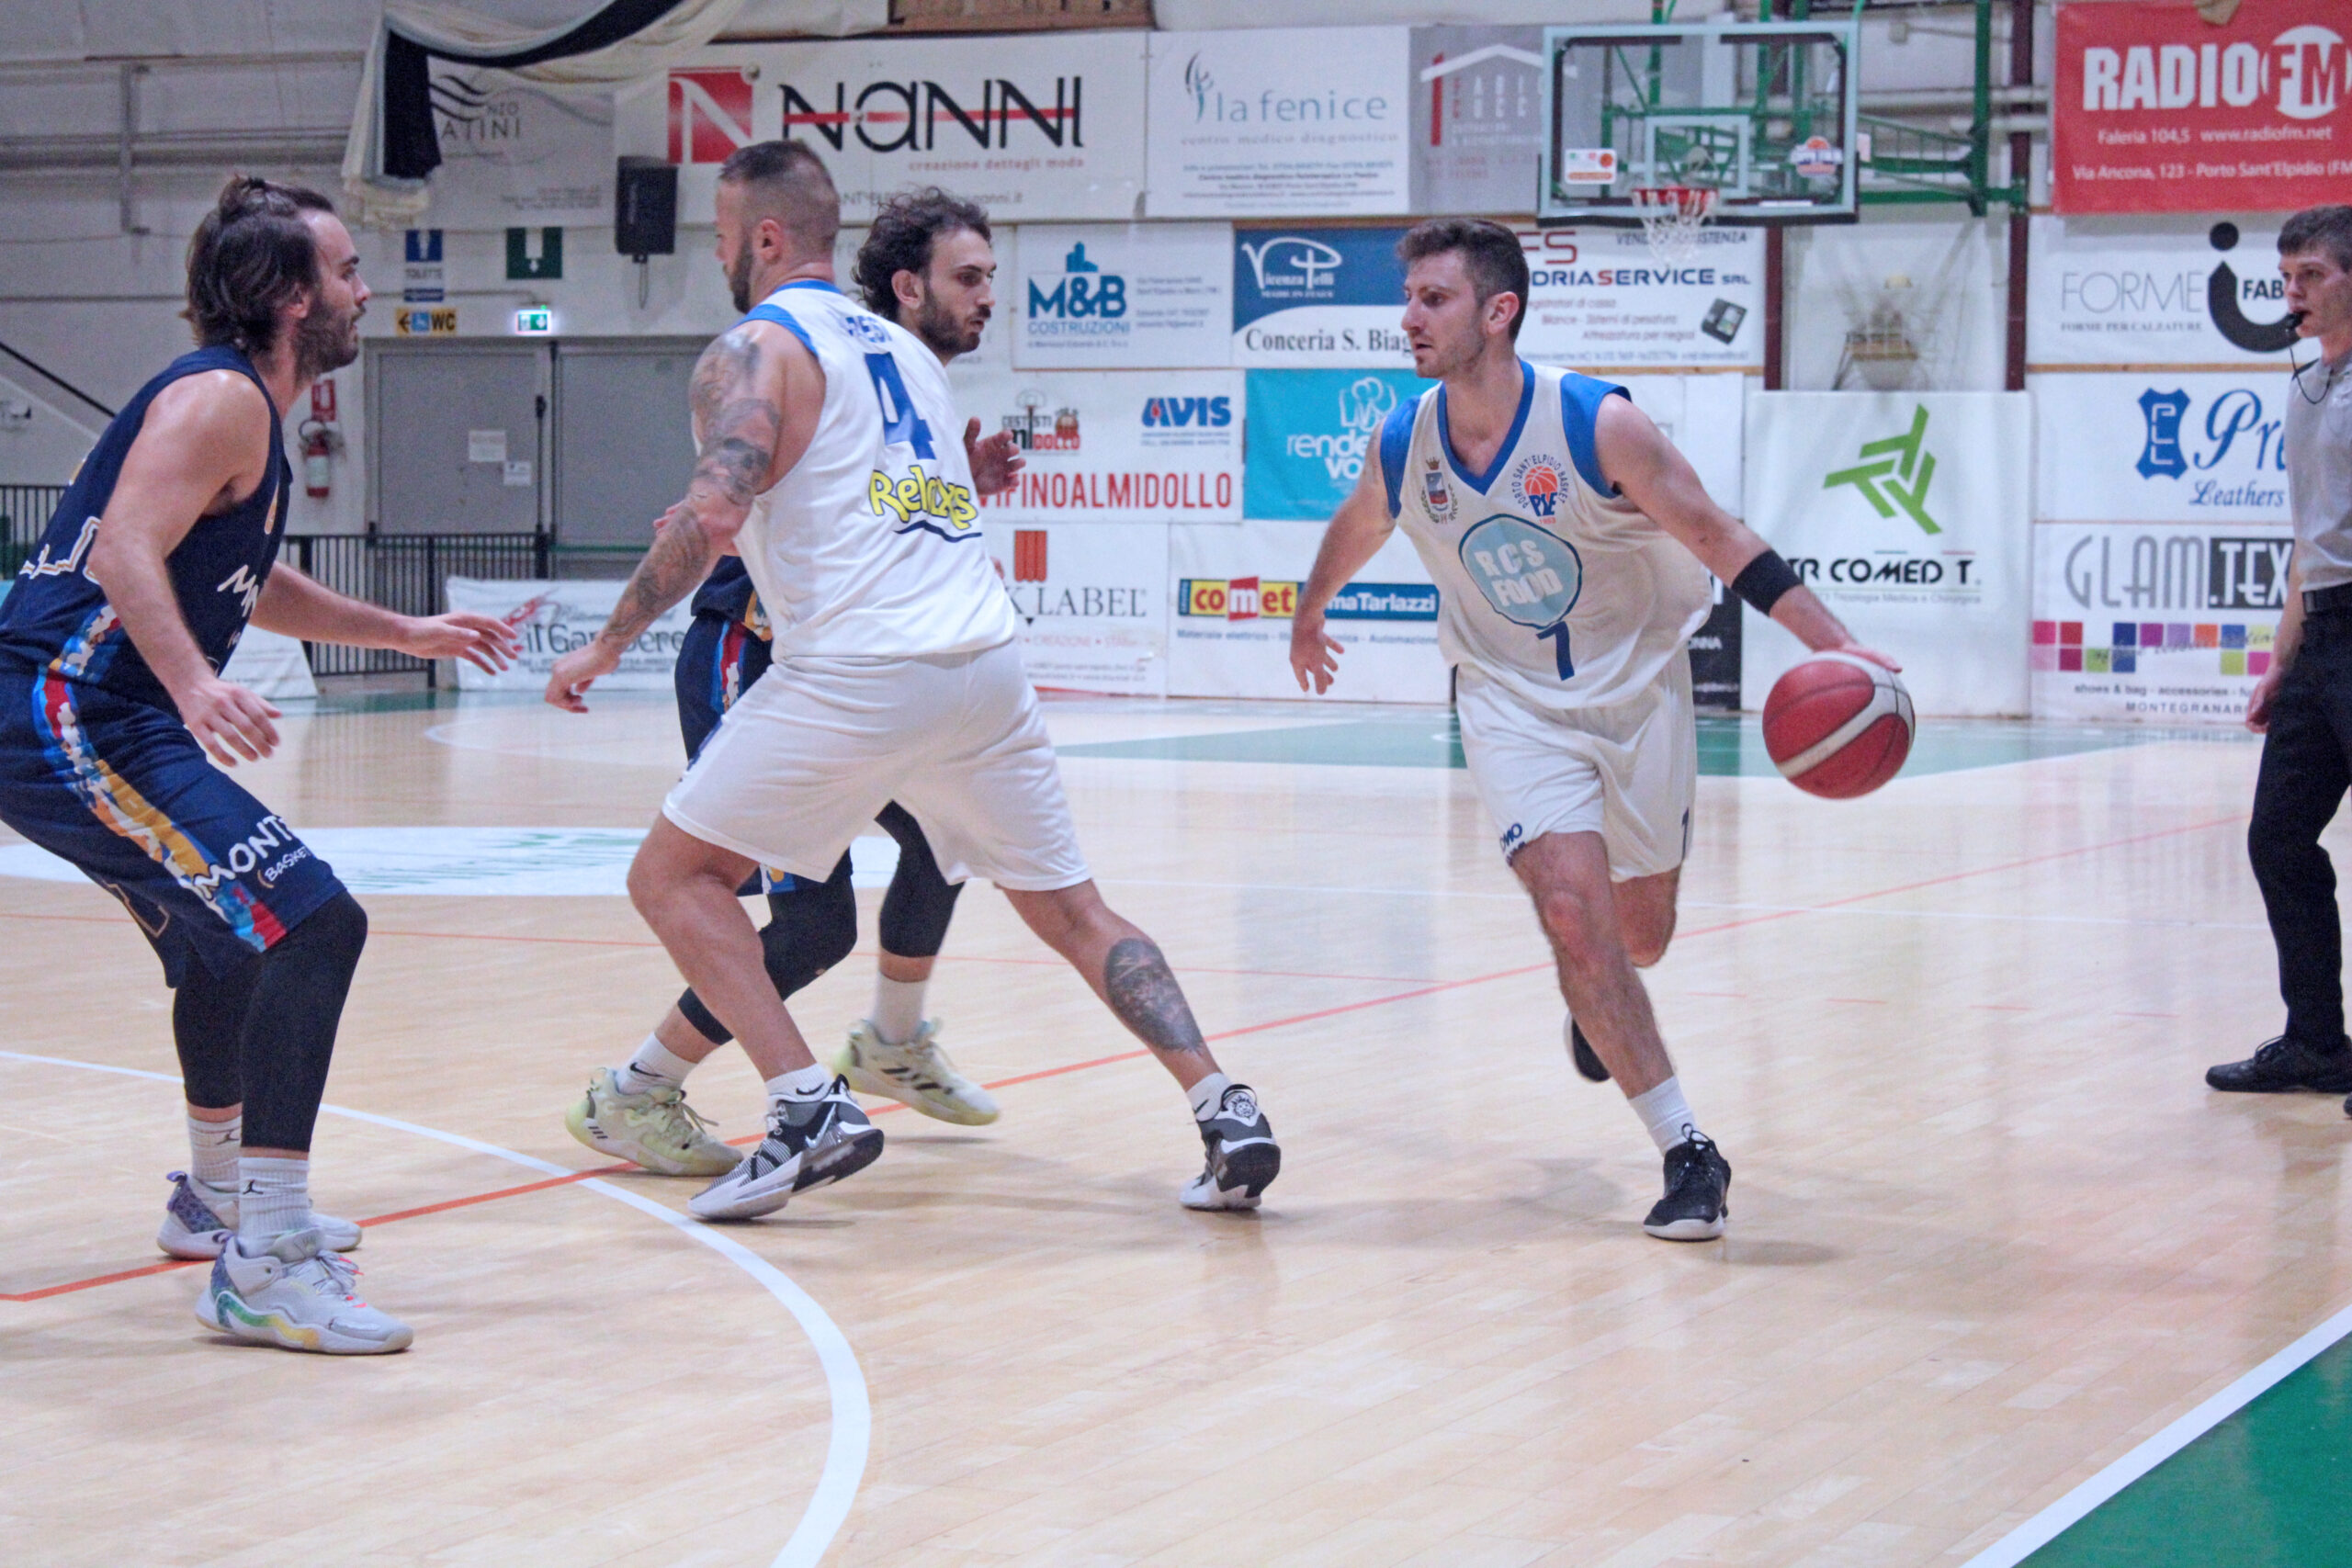 PSE Basket - Montemarciano Basket 71-81: ci abbiamo provato fino alla fine!